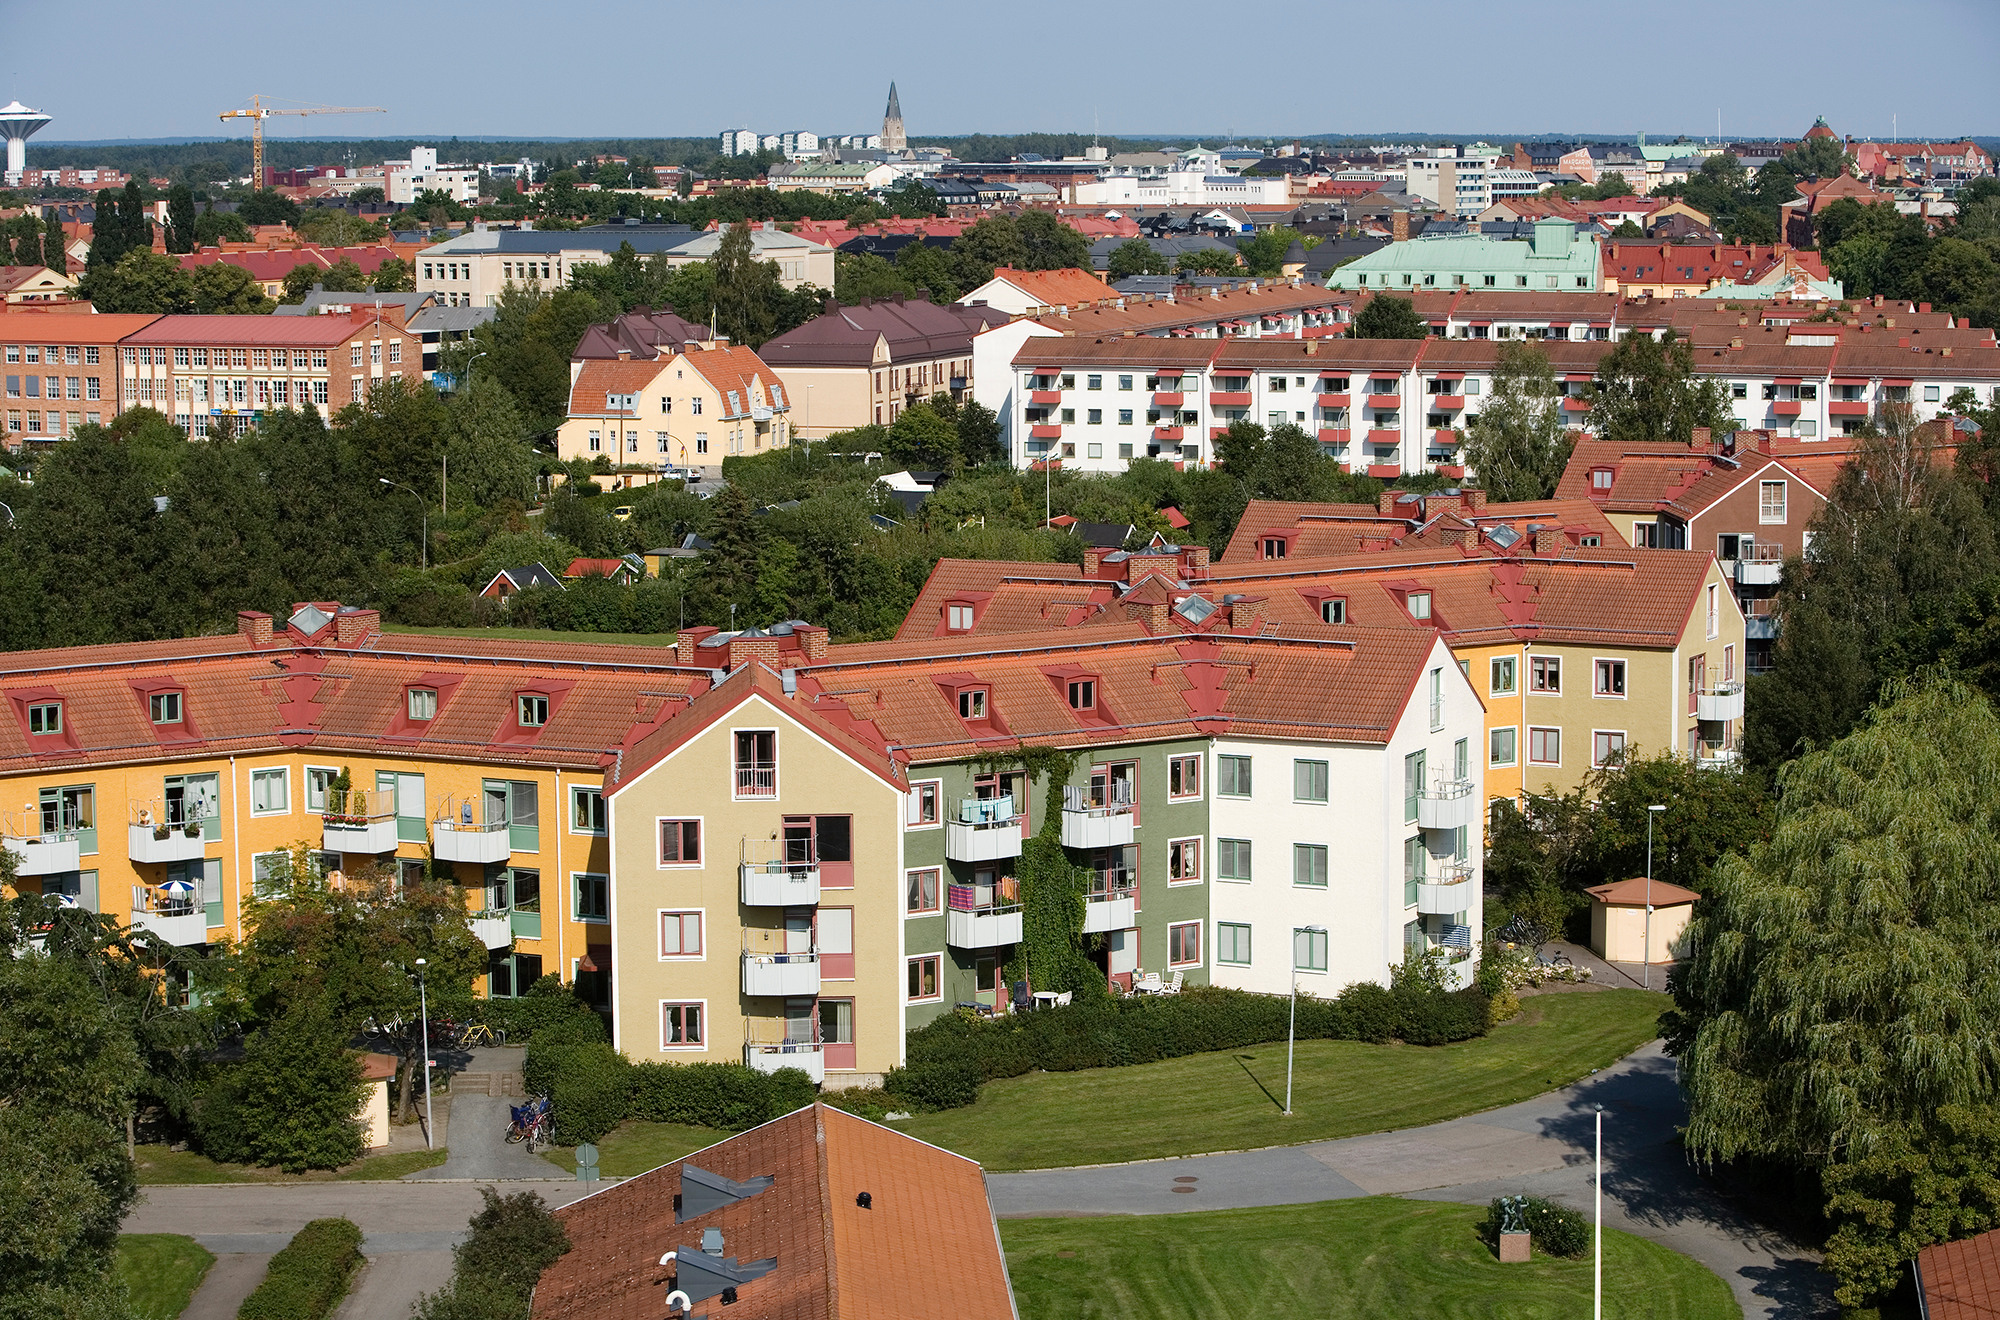 Flygfoto över stadsdelen Rosta. I bakgrunden ser man delar av Örebro som Svampen och Nikolaikyrkan.